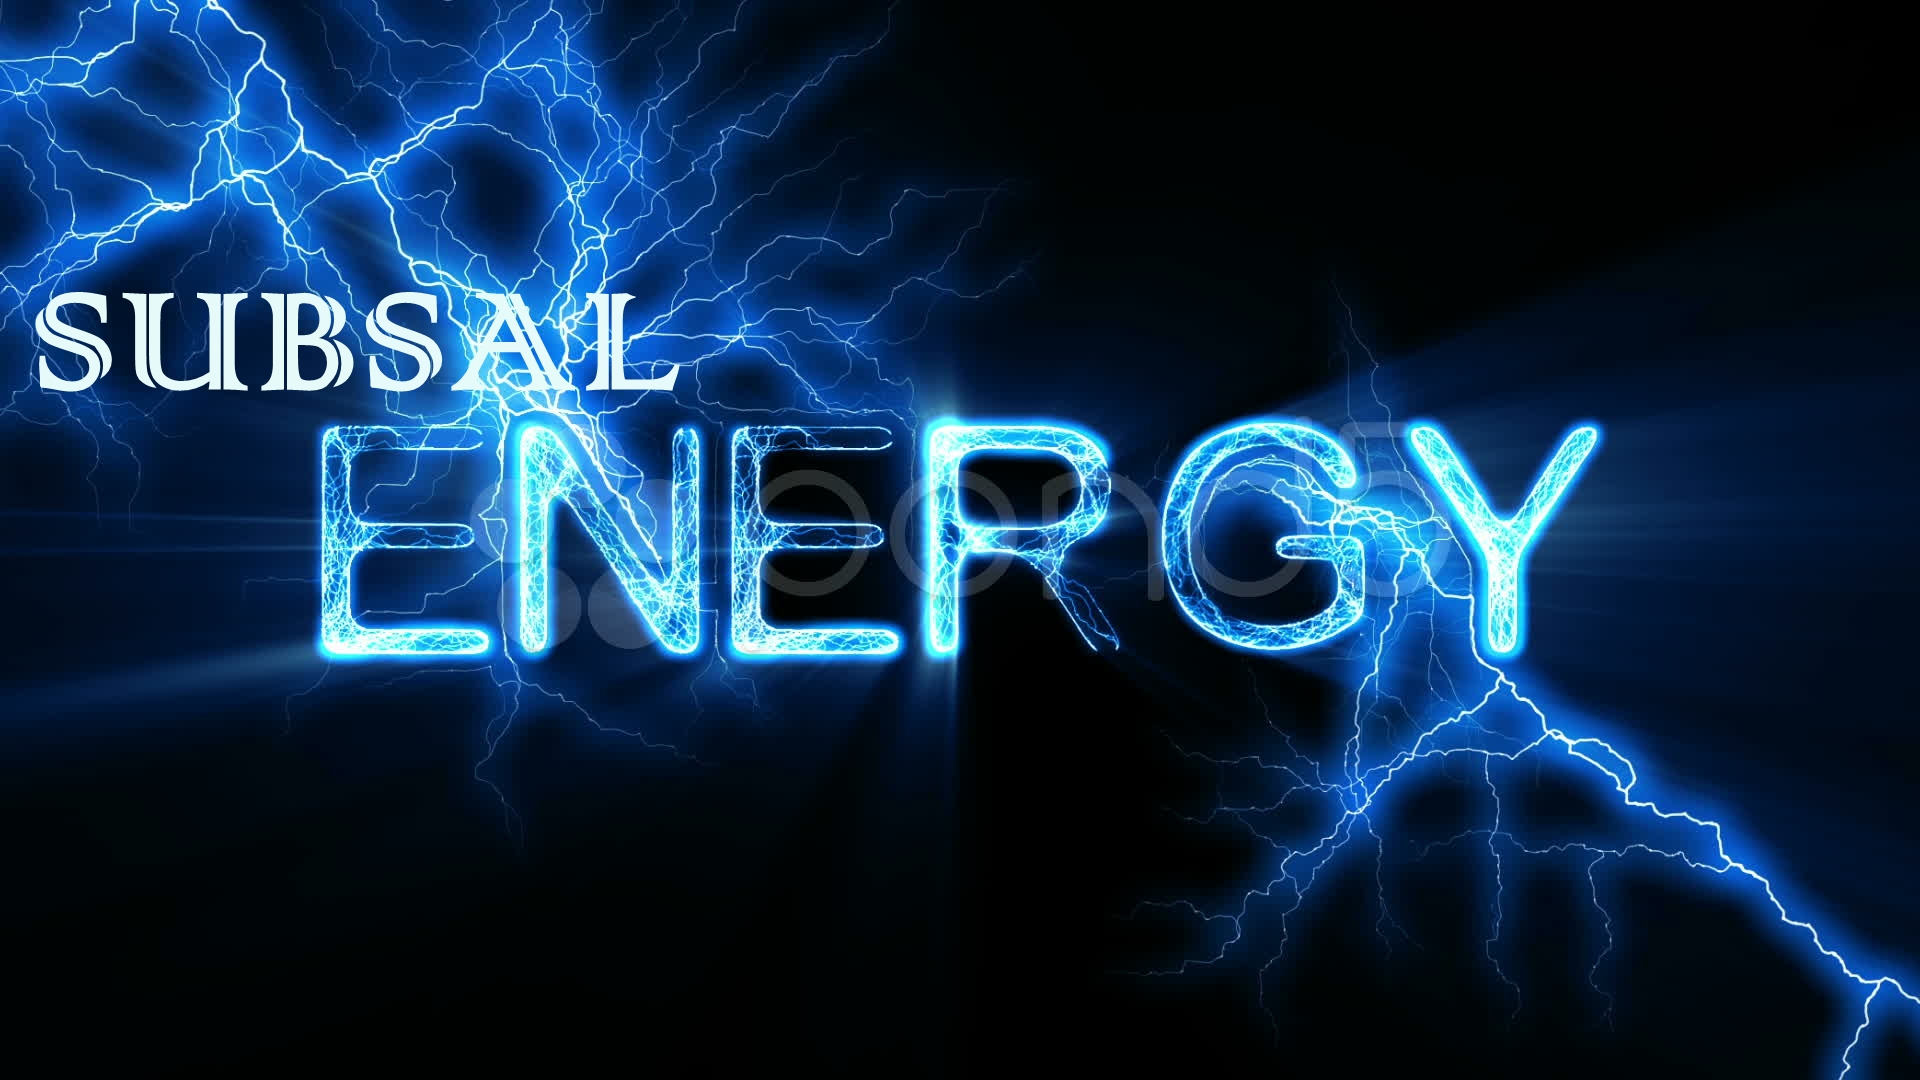 Subsal Energy Corporation